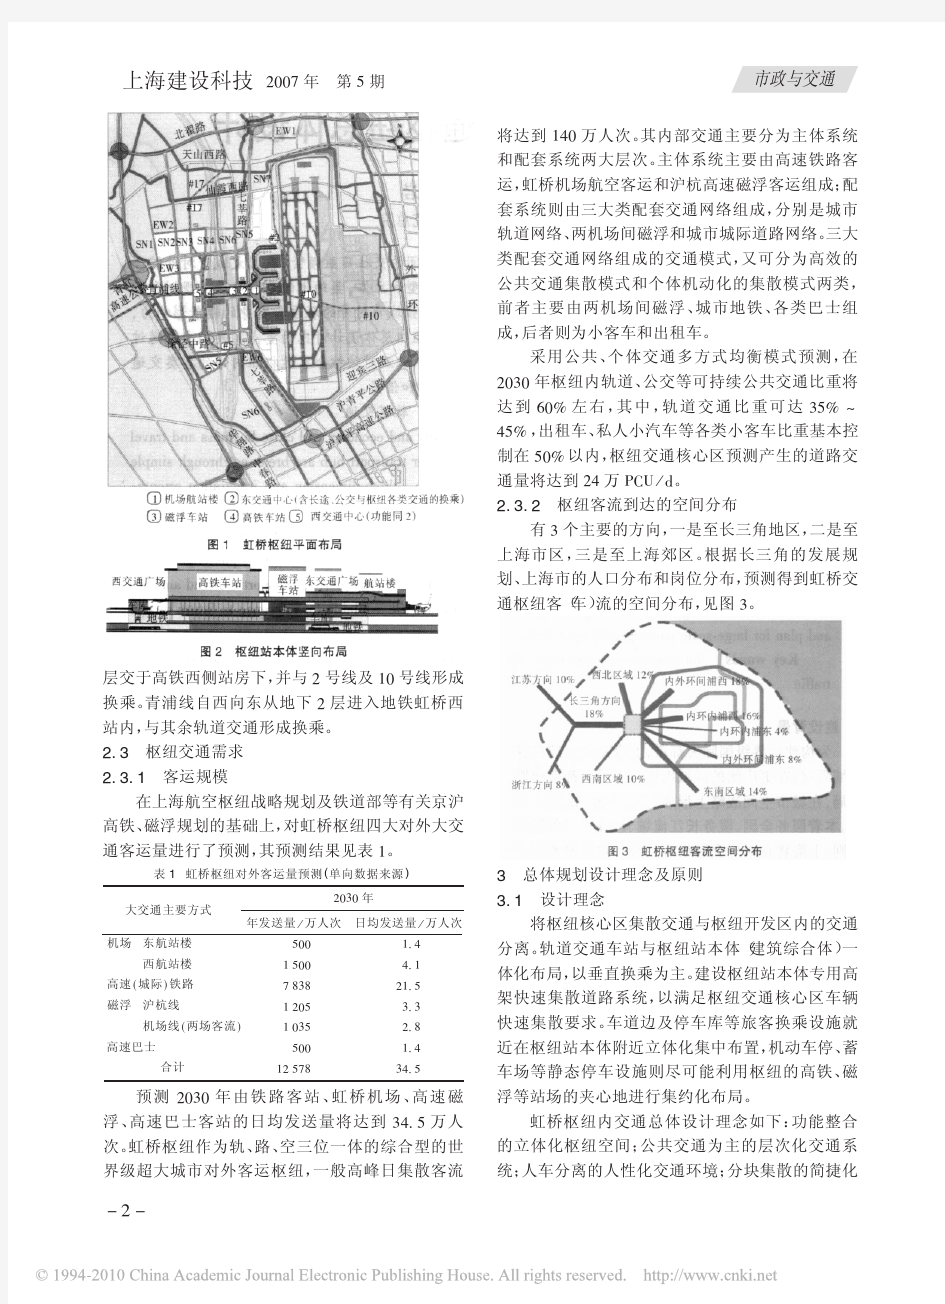 上海虹桥综合交通枢纽总体设计